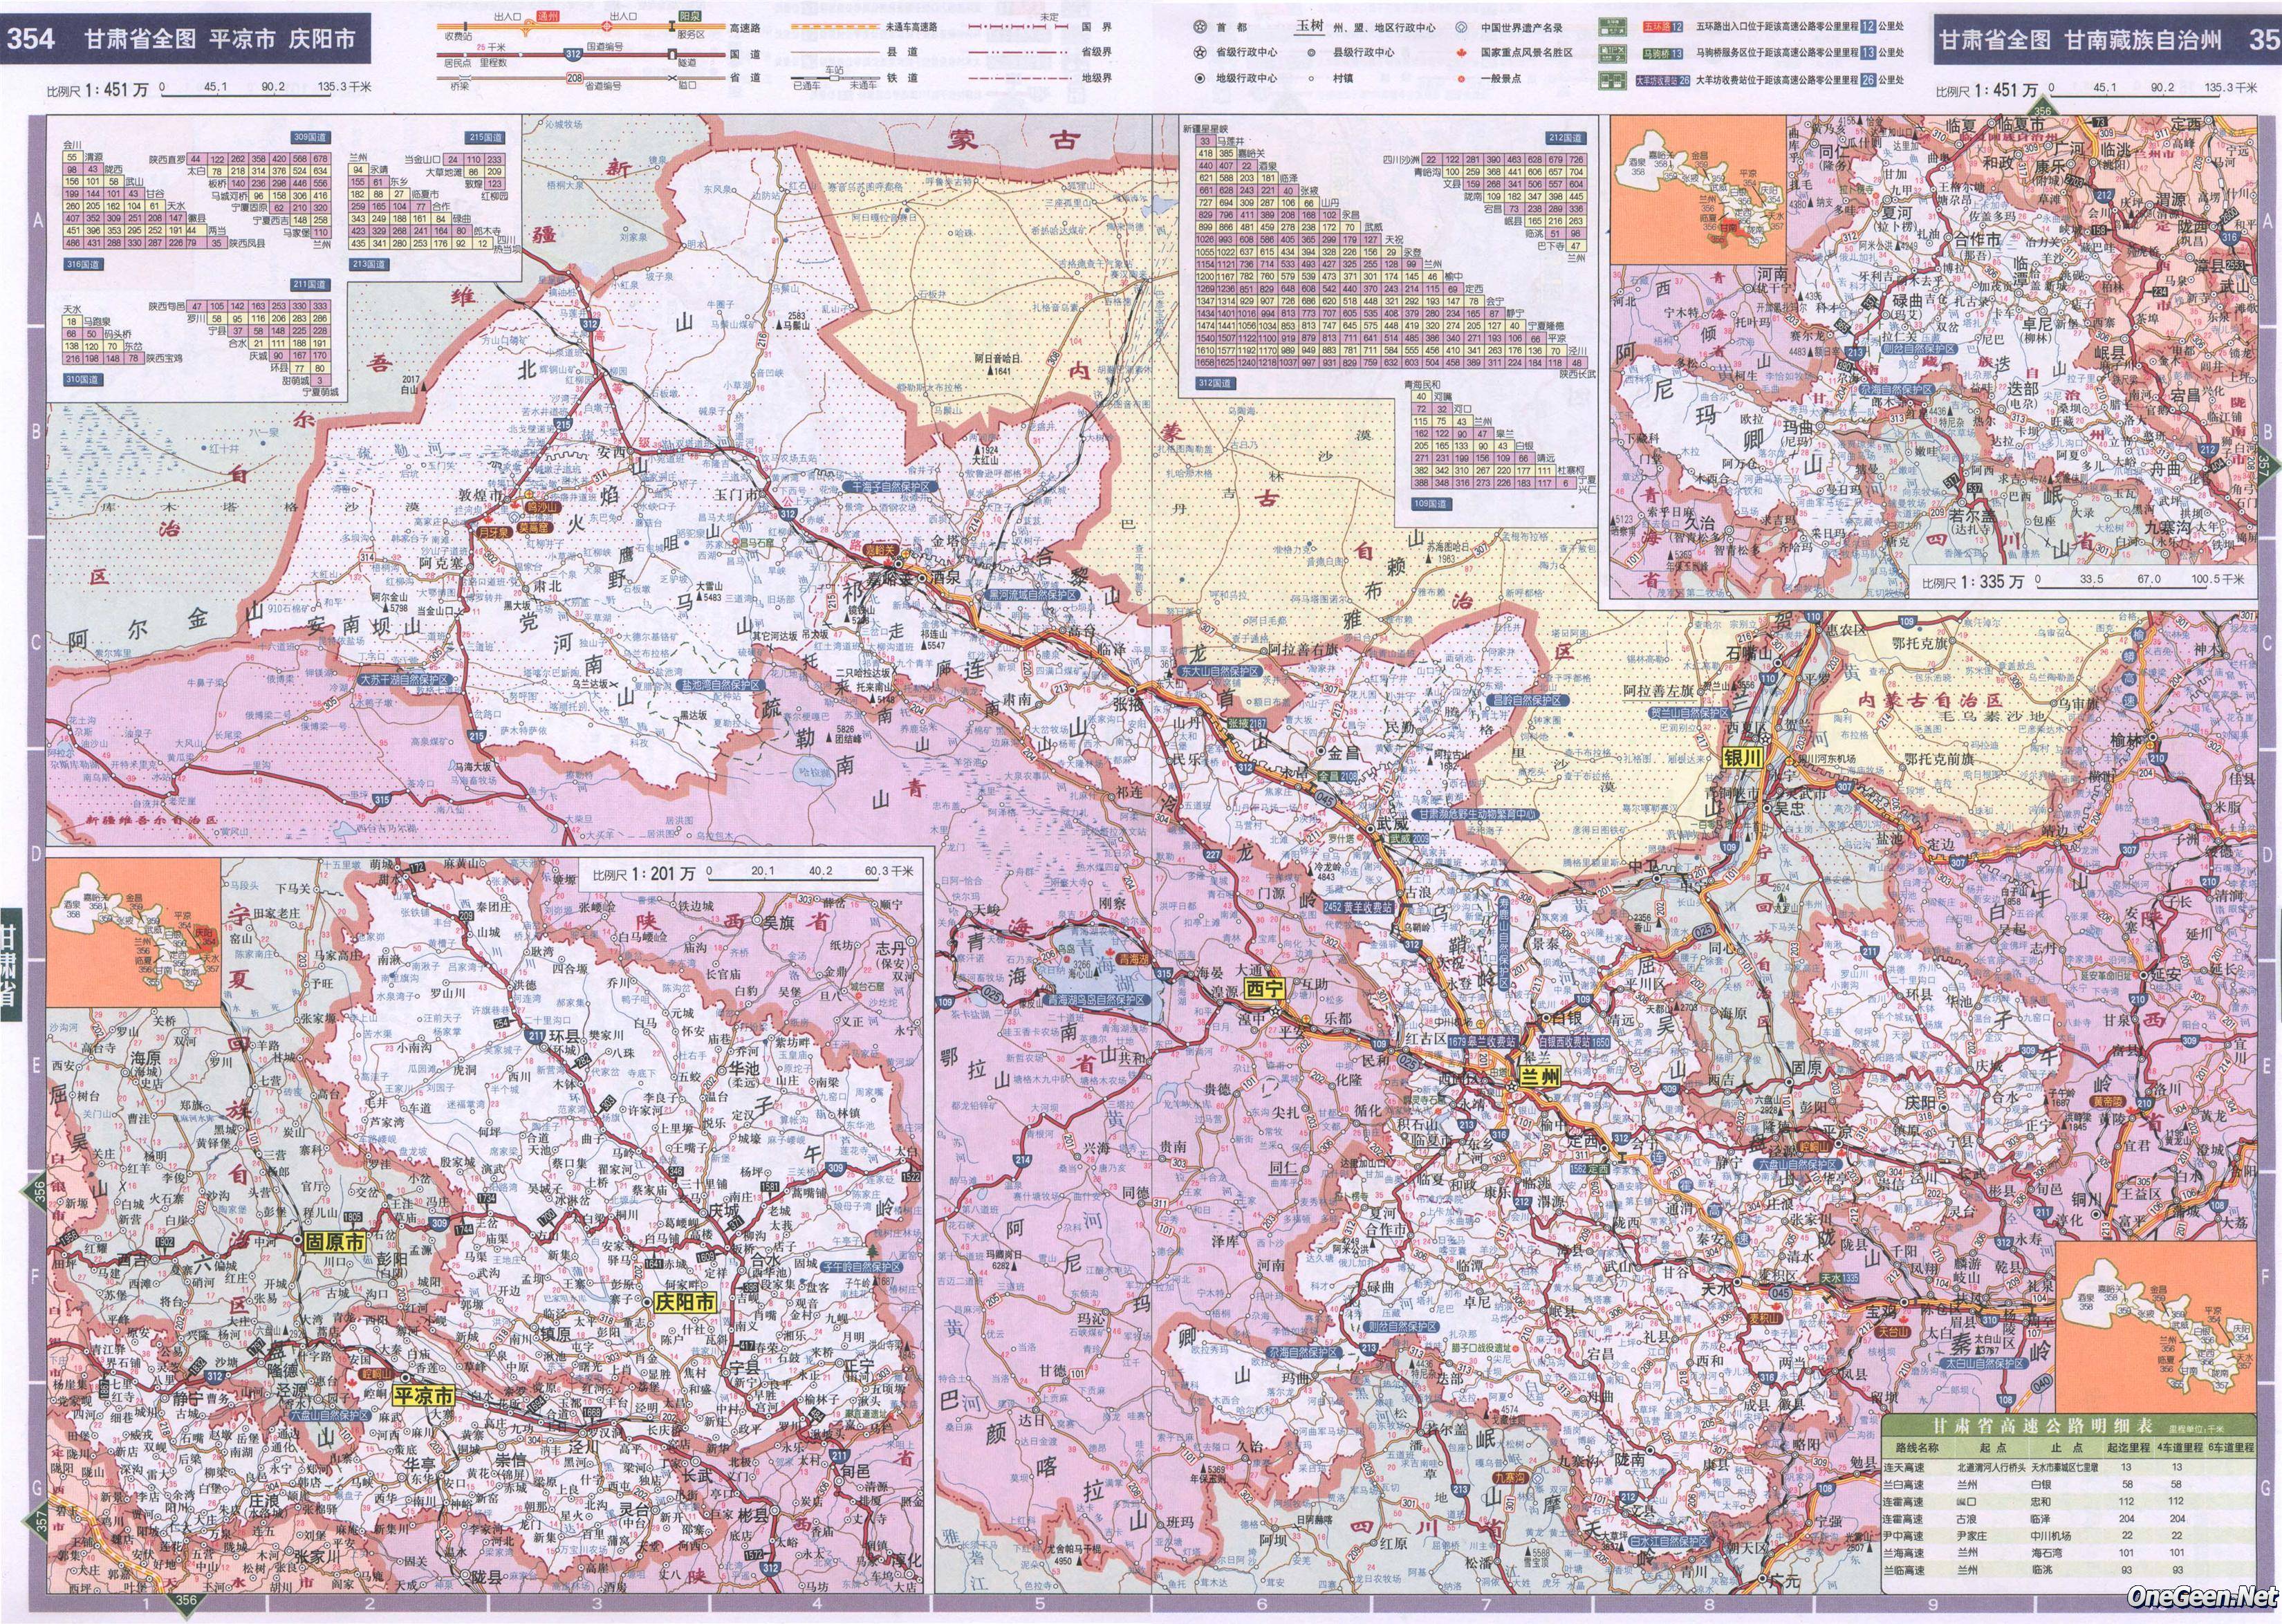 >> 甘肃省交通地图全图    上一张地图: 宁夏银川石嘴山固原公路交通图片